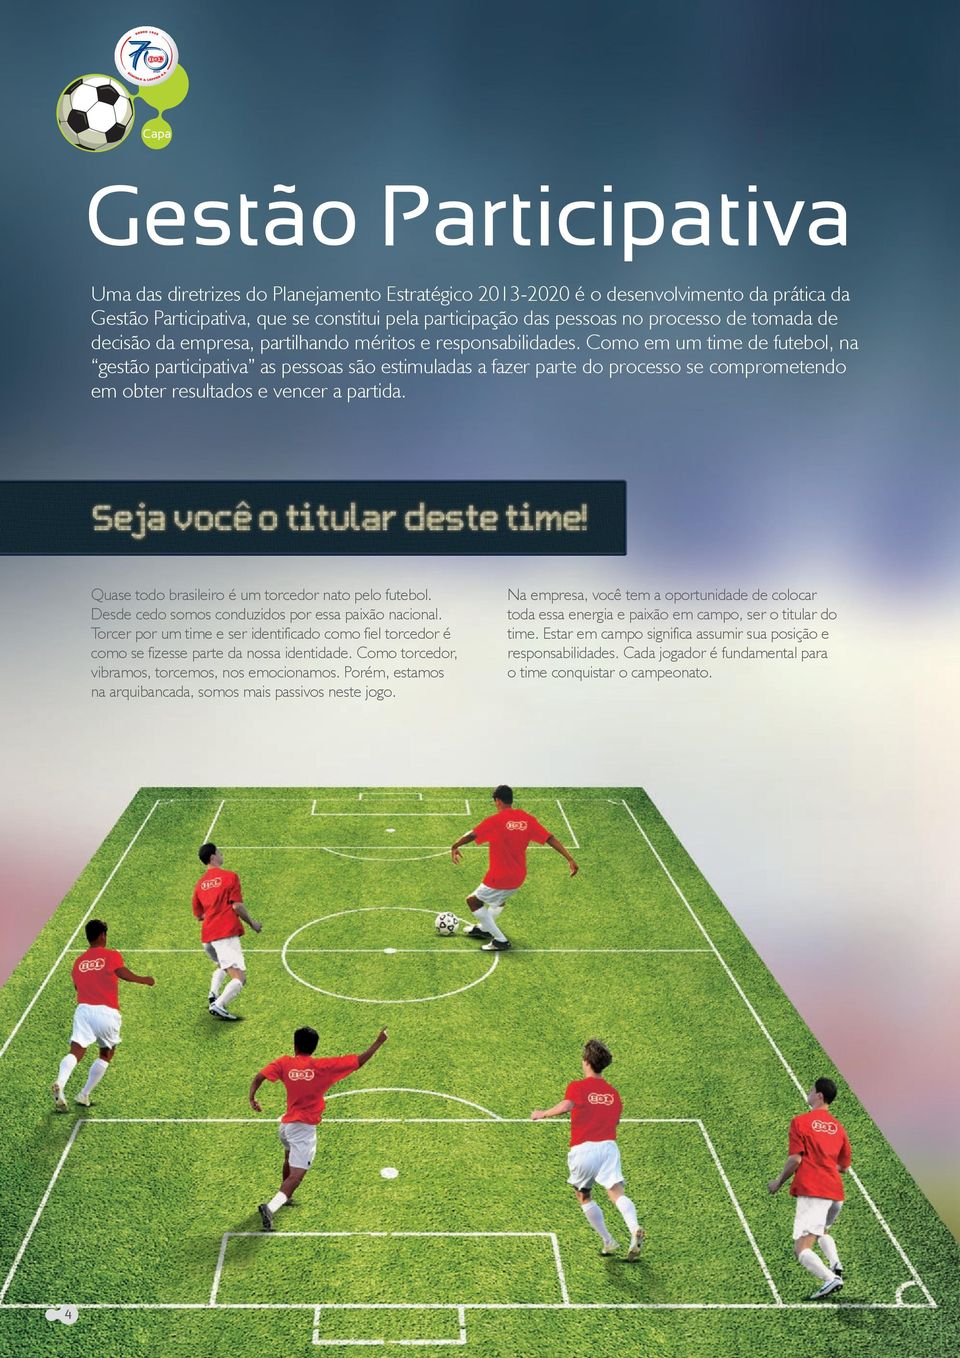 Como em um time de futebol, na gestão participativa as pessoas são estimuladas a fazer parte do processo se comprometendo em obter resultados e vencer a partida.